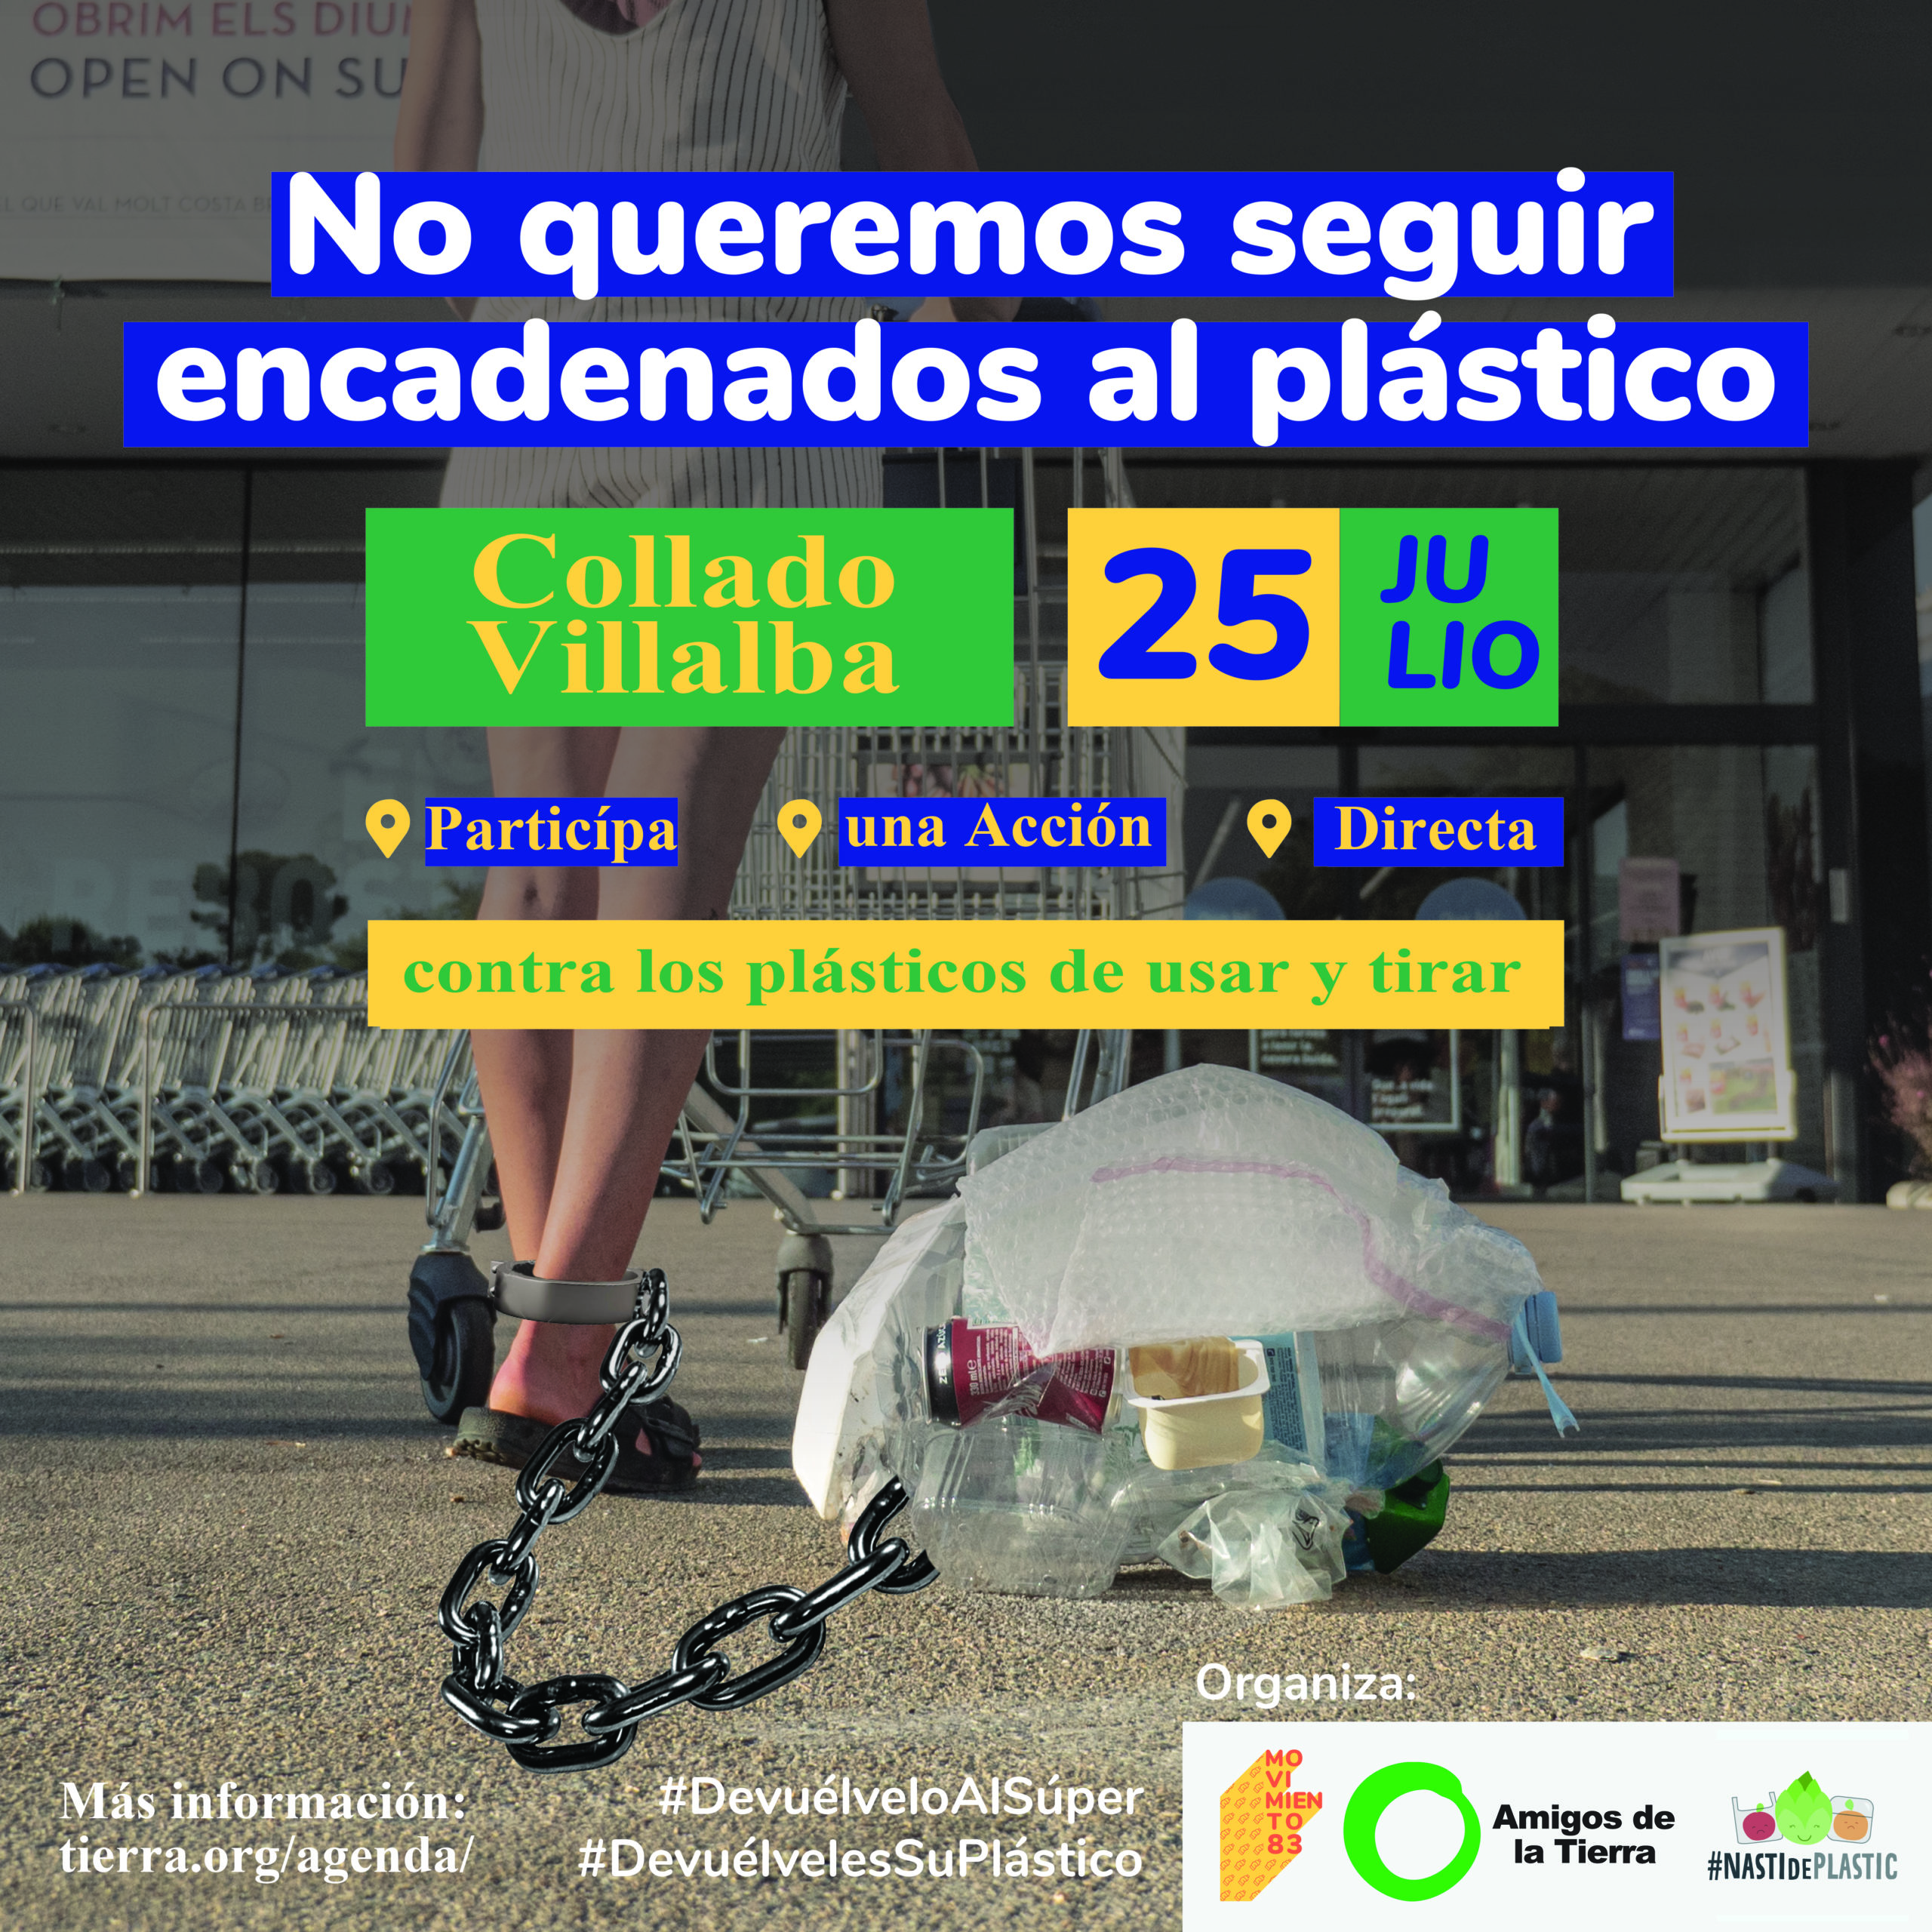 Ir a Madrid: Acción Directa Plastic Attack